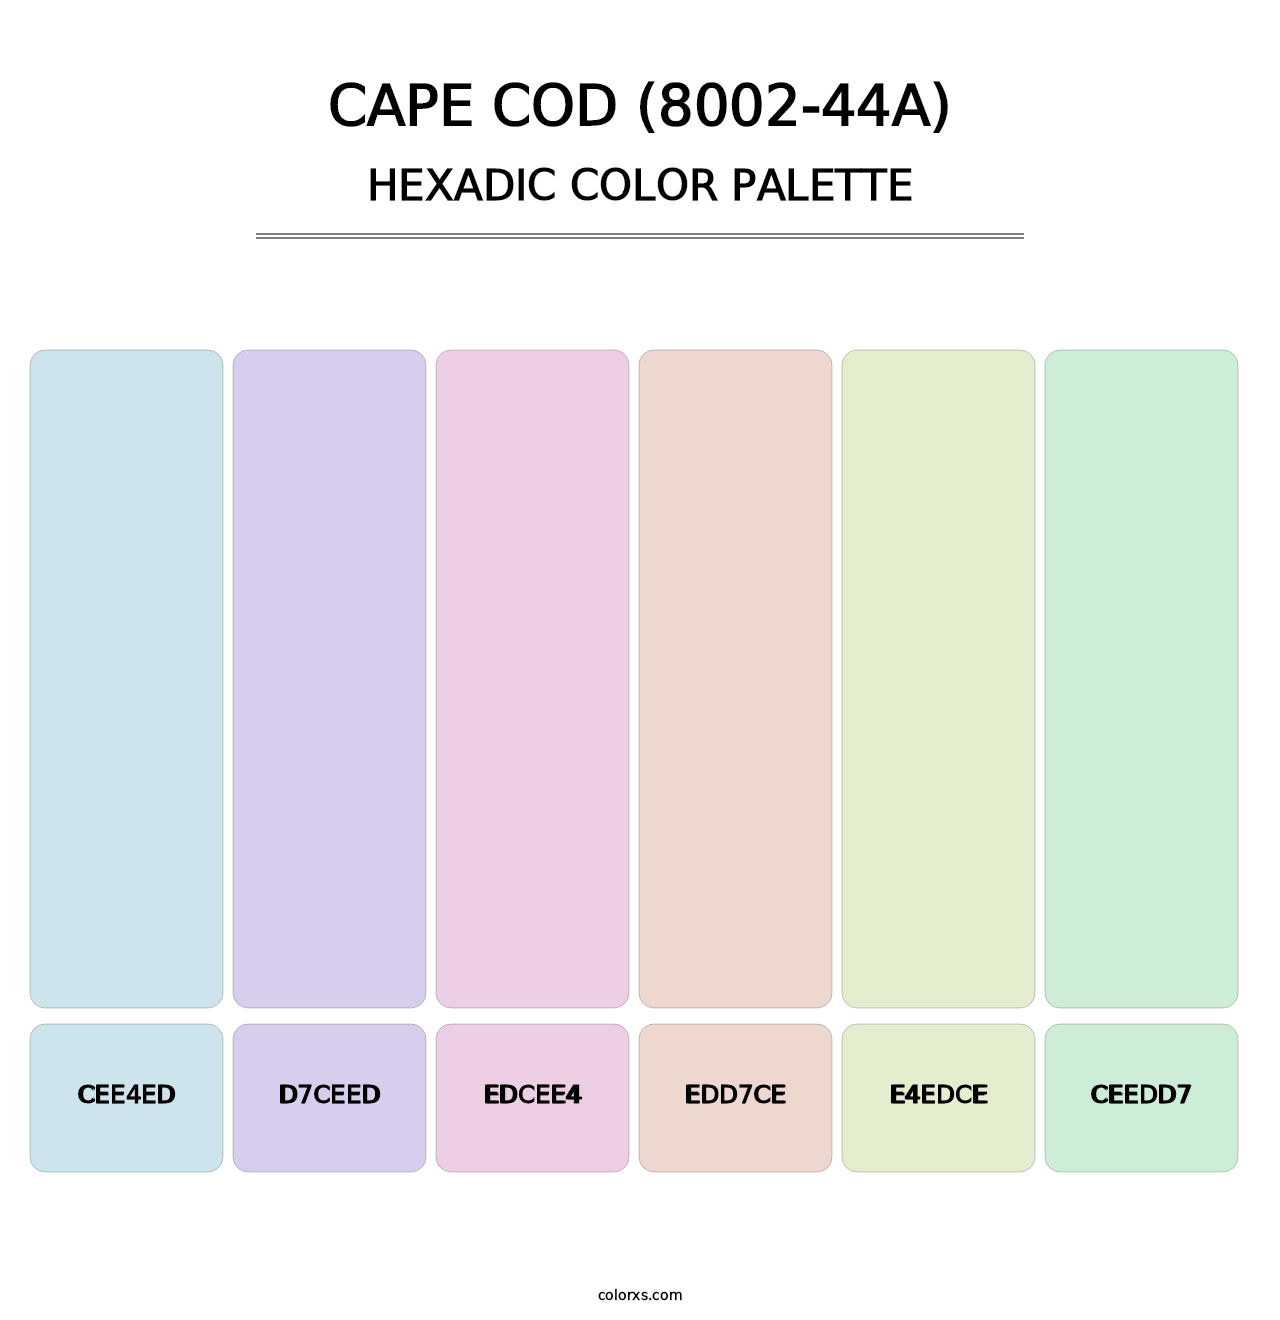 Cape Cod (8002-44A) - Hexadic Color Palette